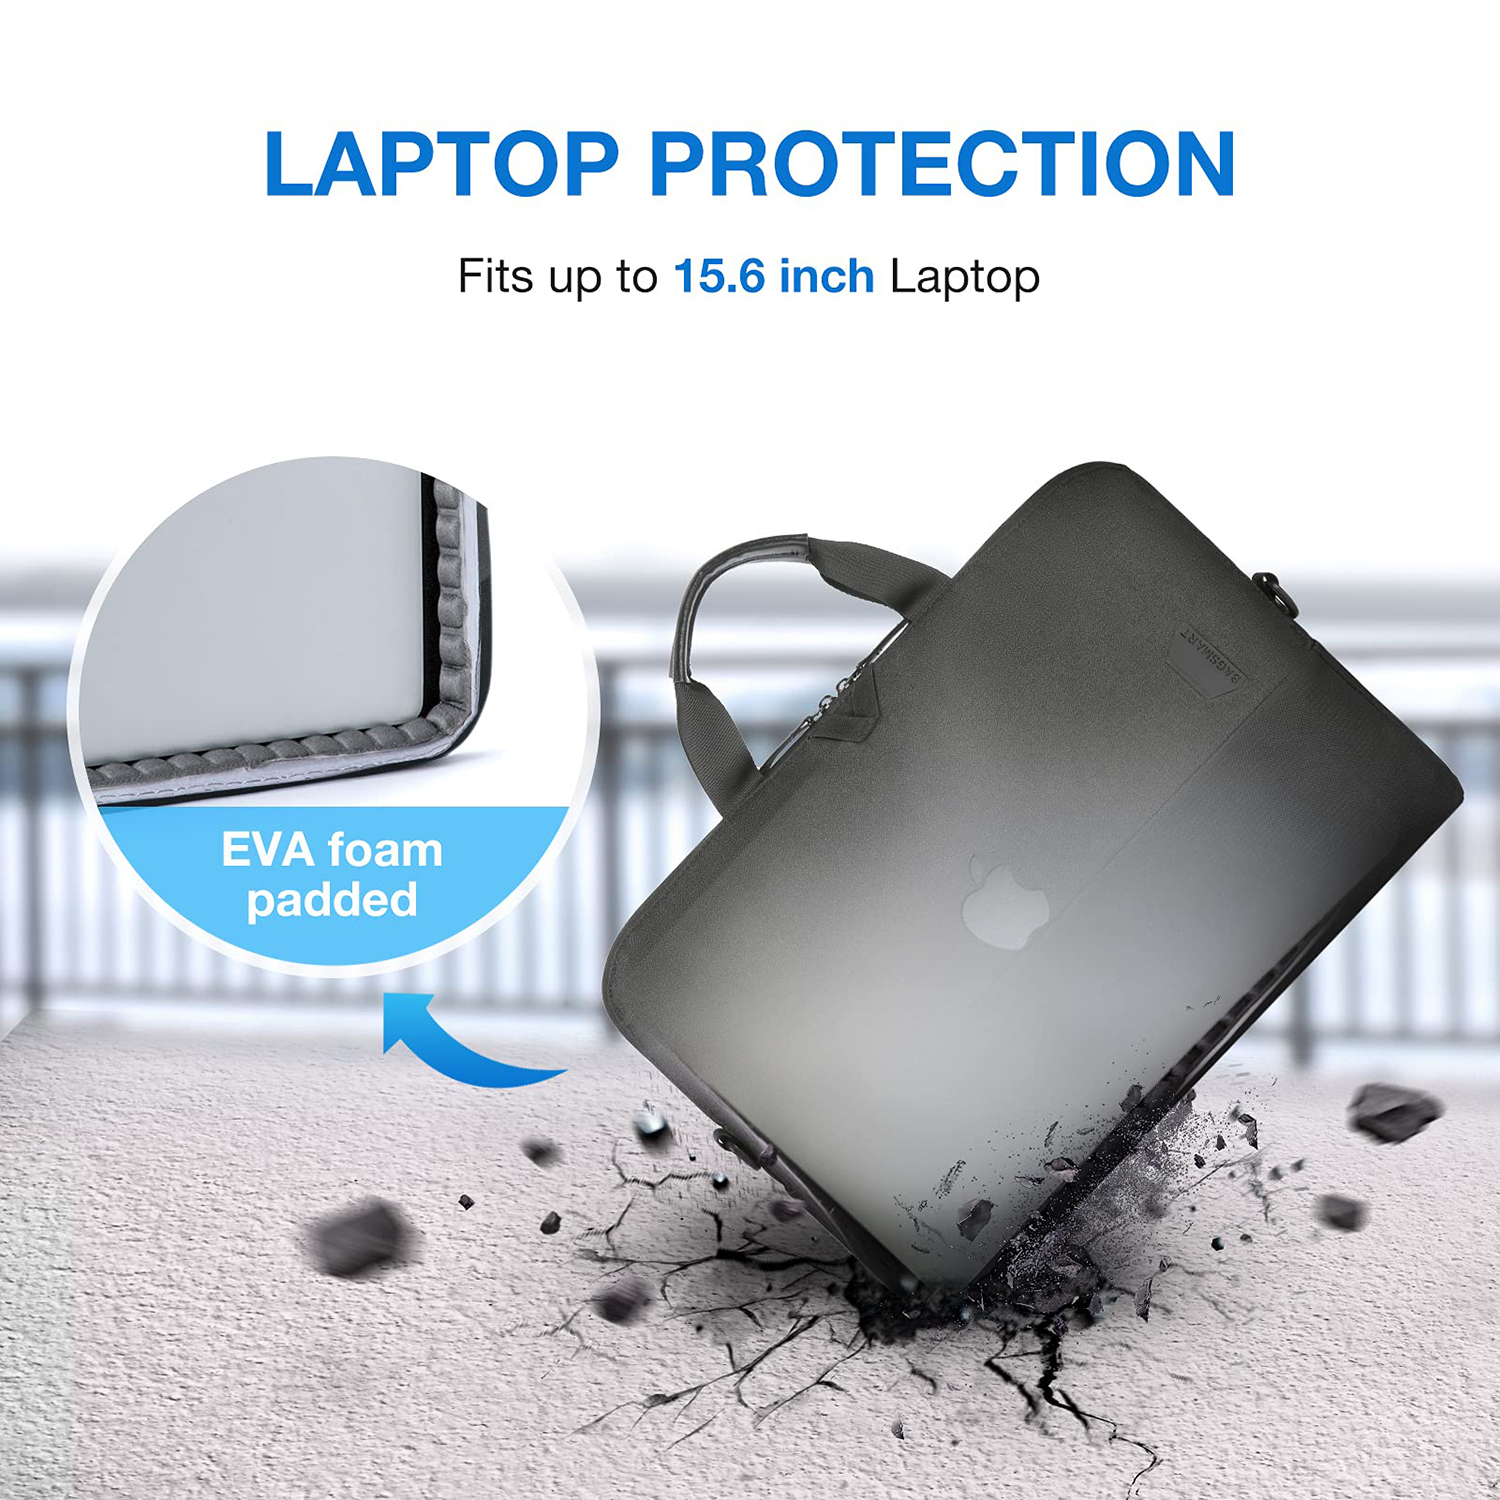 LaptopBag-Durable-Fashion-Waterproof-8